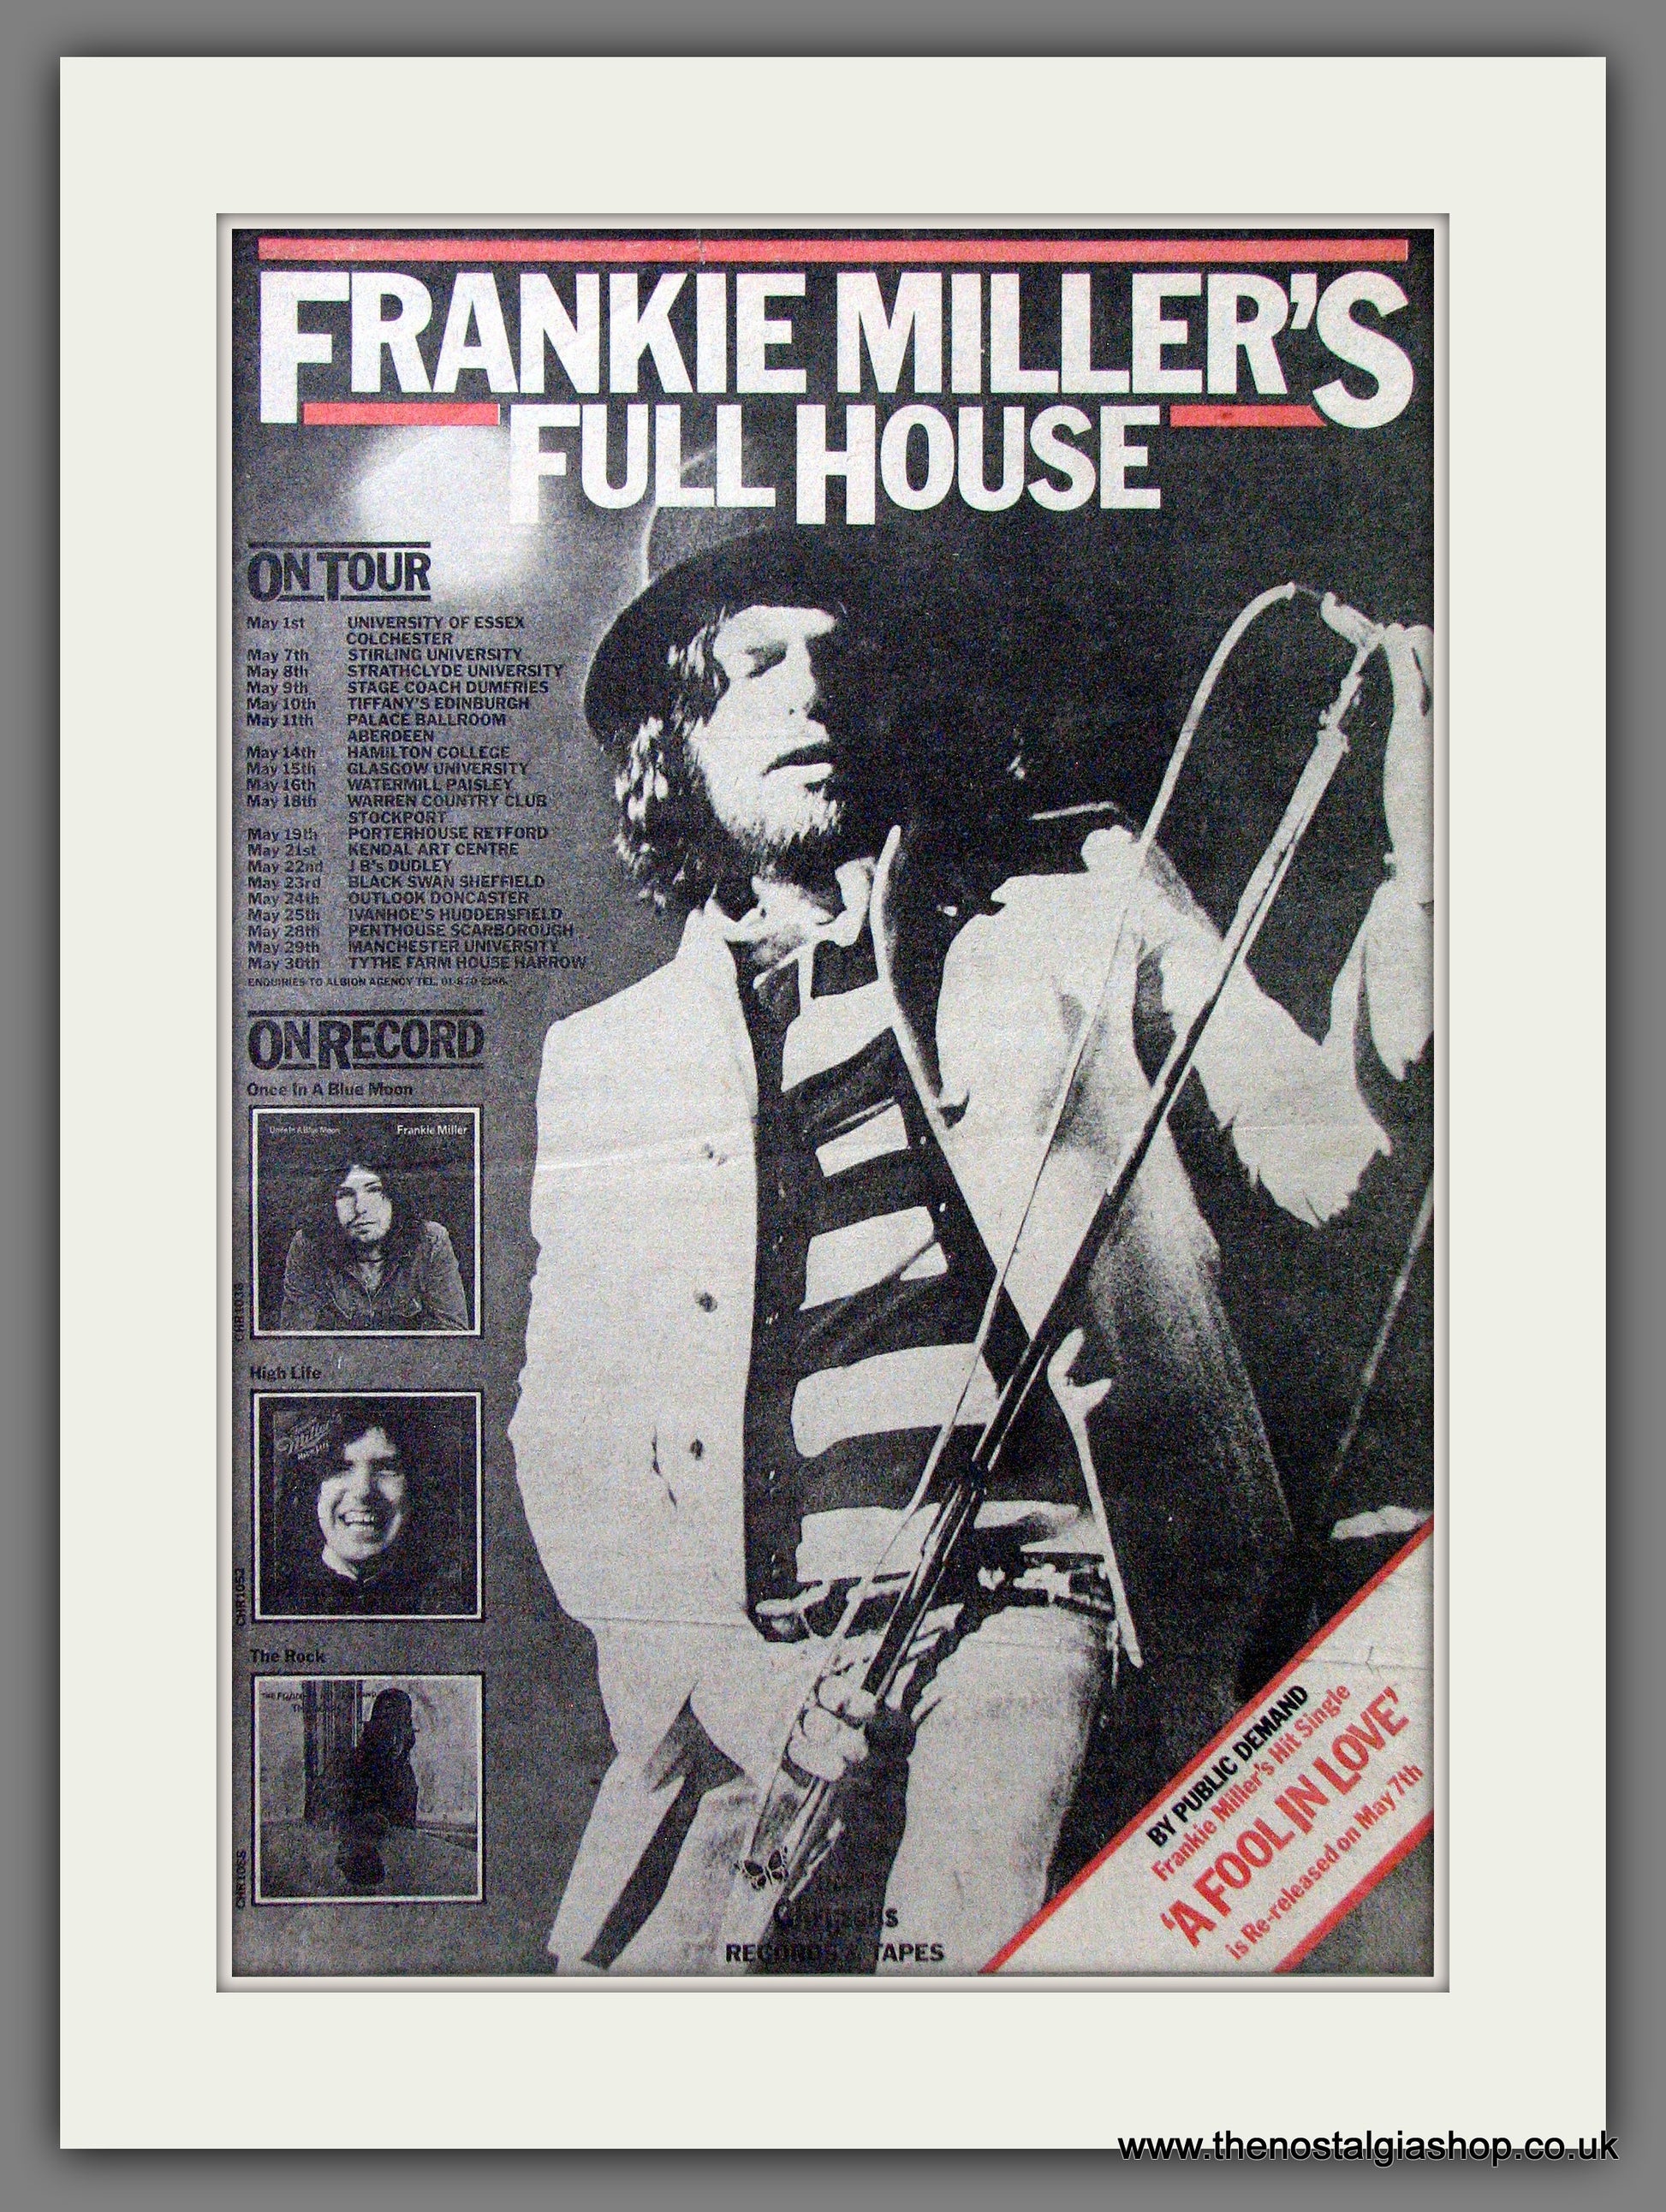 frankie miller's full house tour